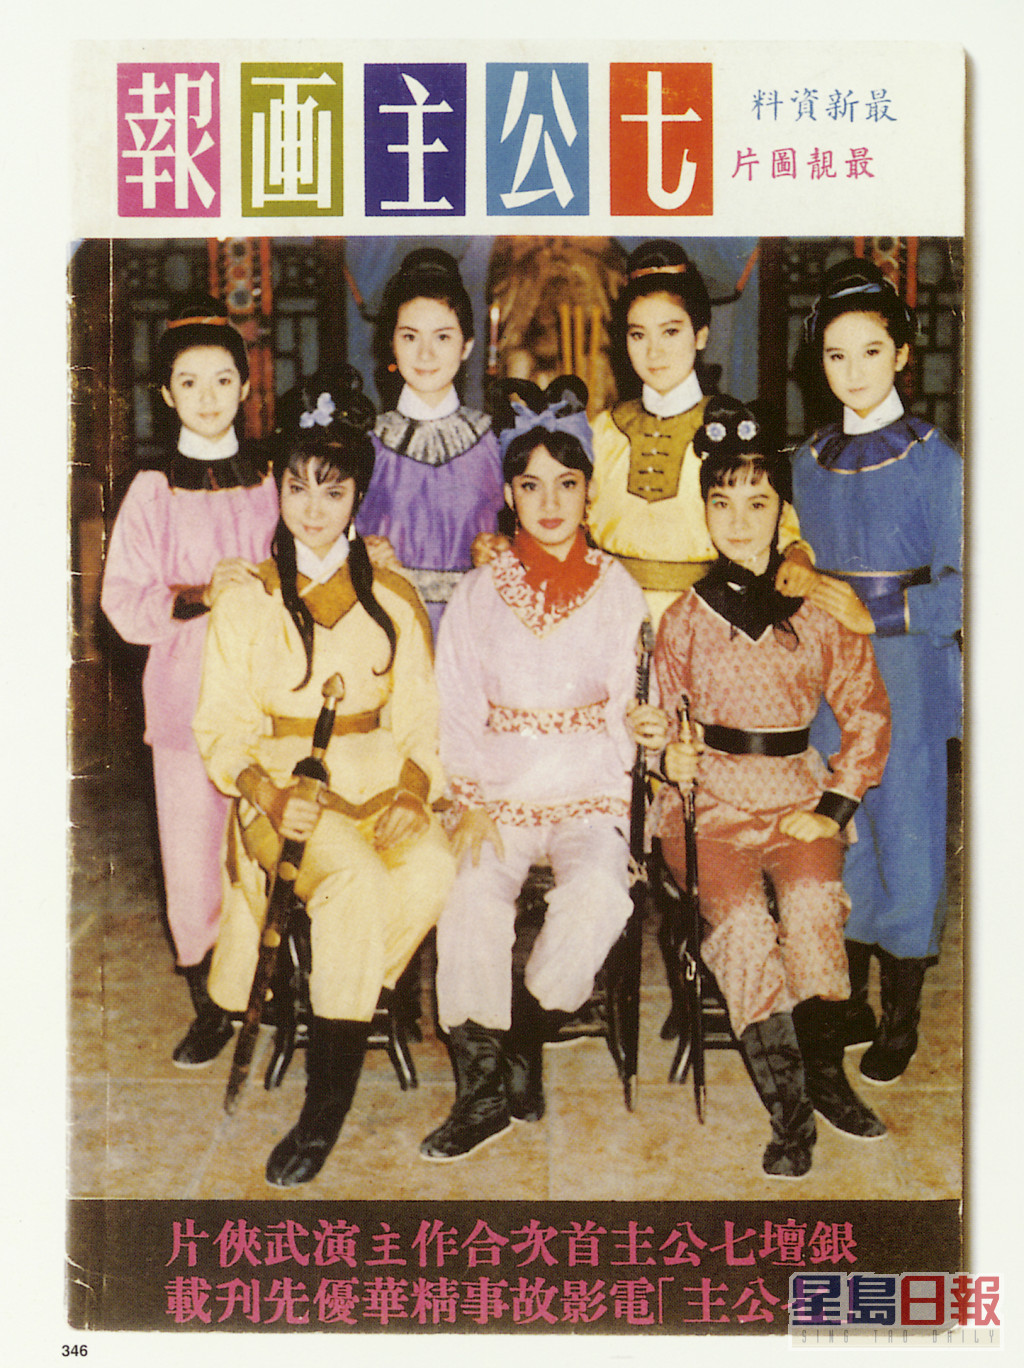 1967年七人一同拍摄《七公主》，成为她们的代表作品。